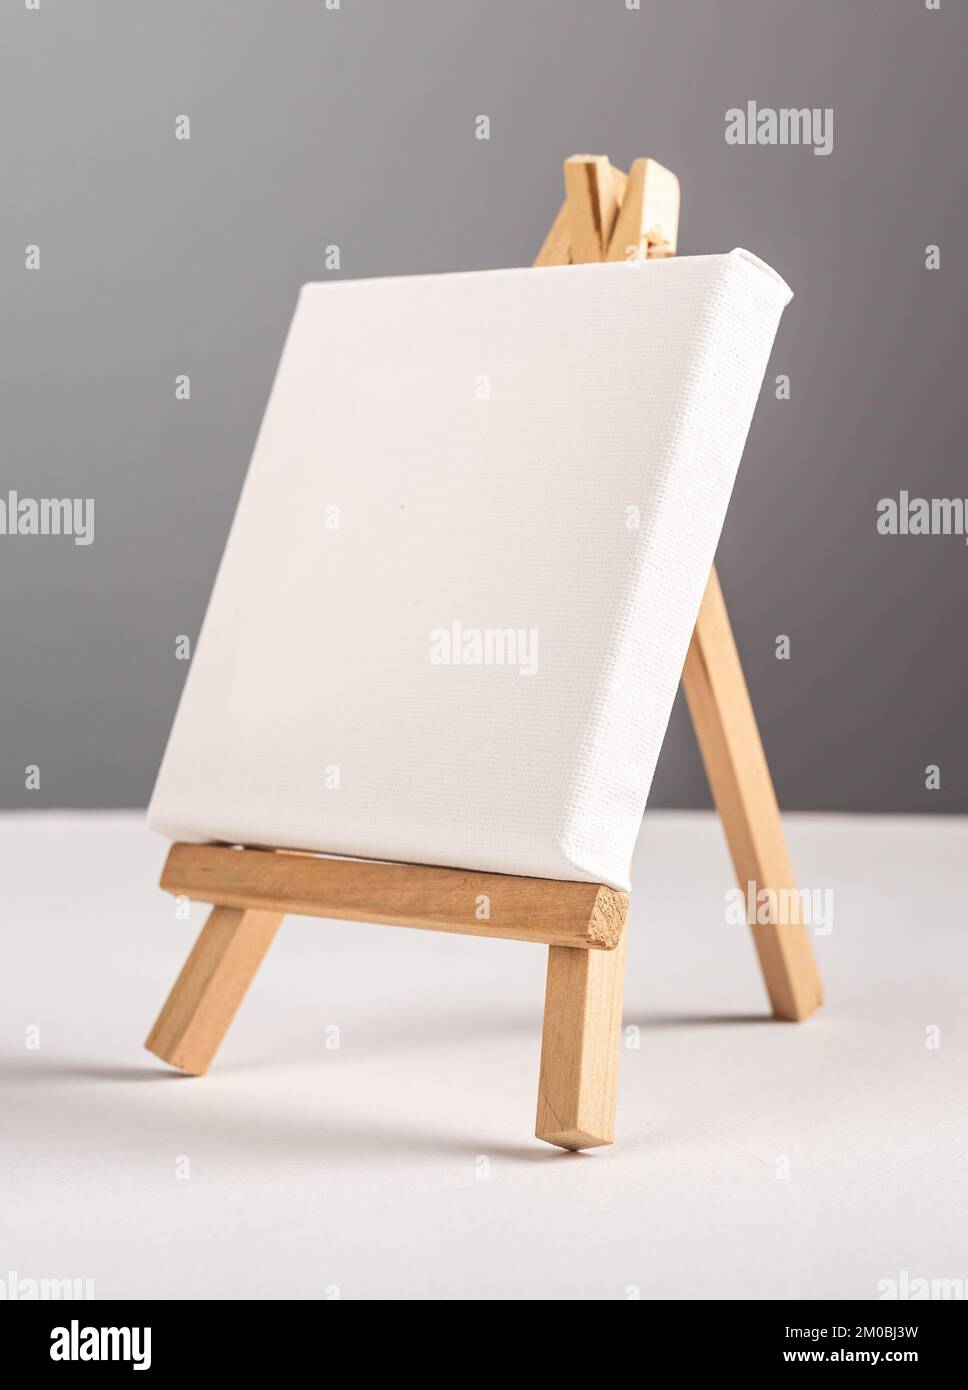 Mockup vuoto in tela bianca su cavalletto in legno mini sulla scrivania. Foto di alta qualità Foto Stock